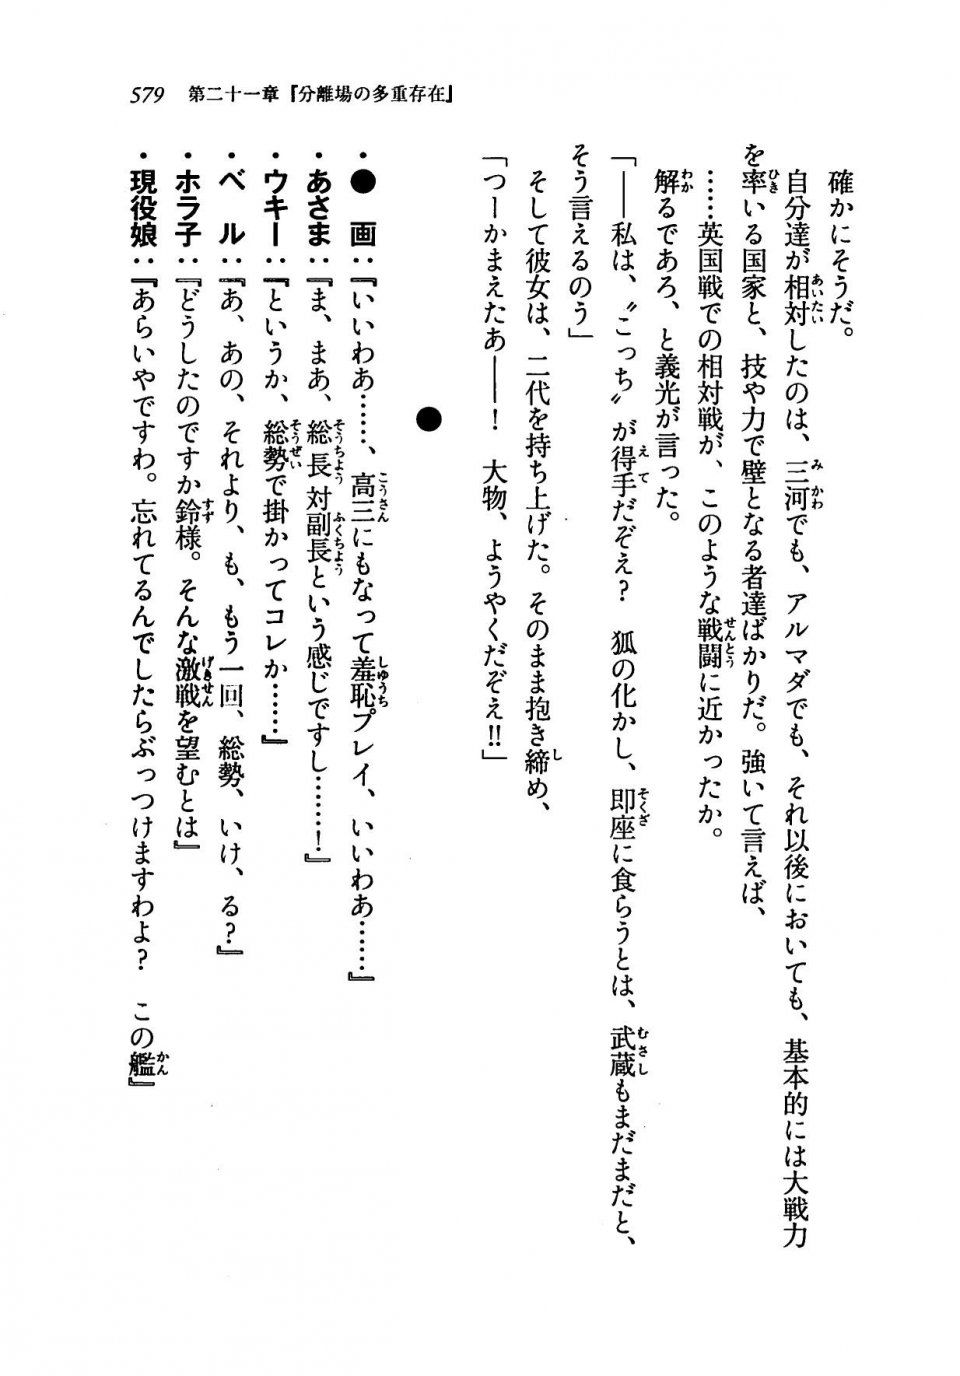 Kyoukai Senjou no Horizon LN Vol 19(8A) - Photo #579